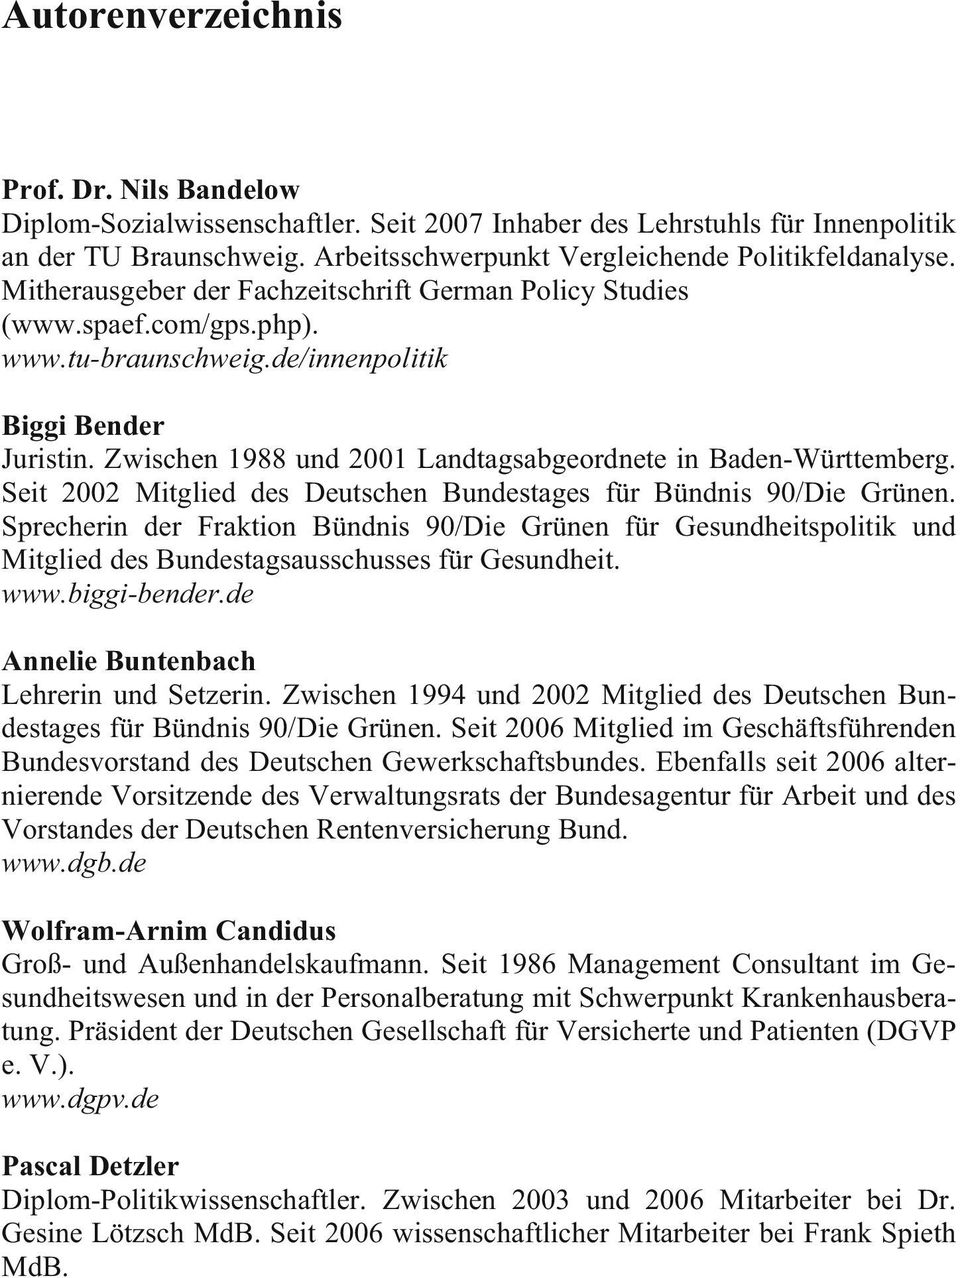 Zwischen 1988 und 2001 Landtagsabgeordnete in Baden-Württemberg. Seit 2002 Mitglied des Deutschen Bundestages für Bündnis 90/Die Grünen.